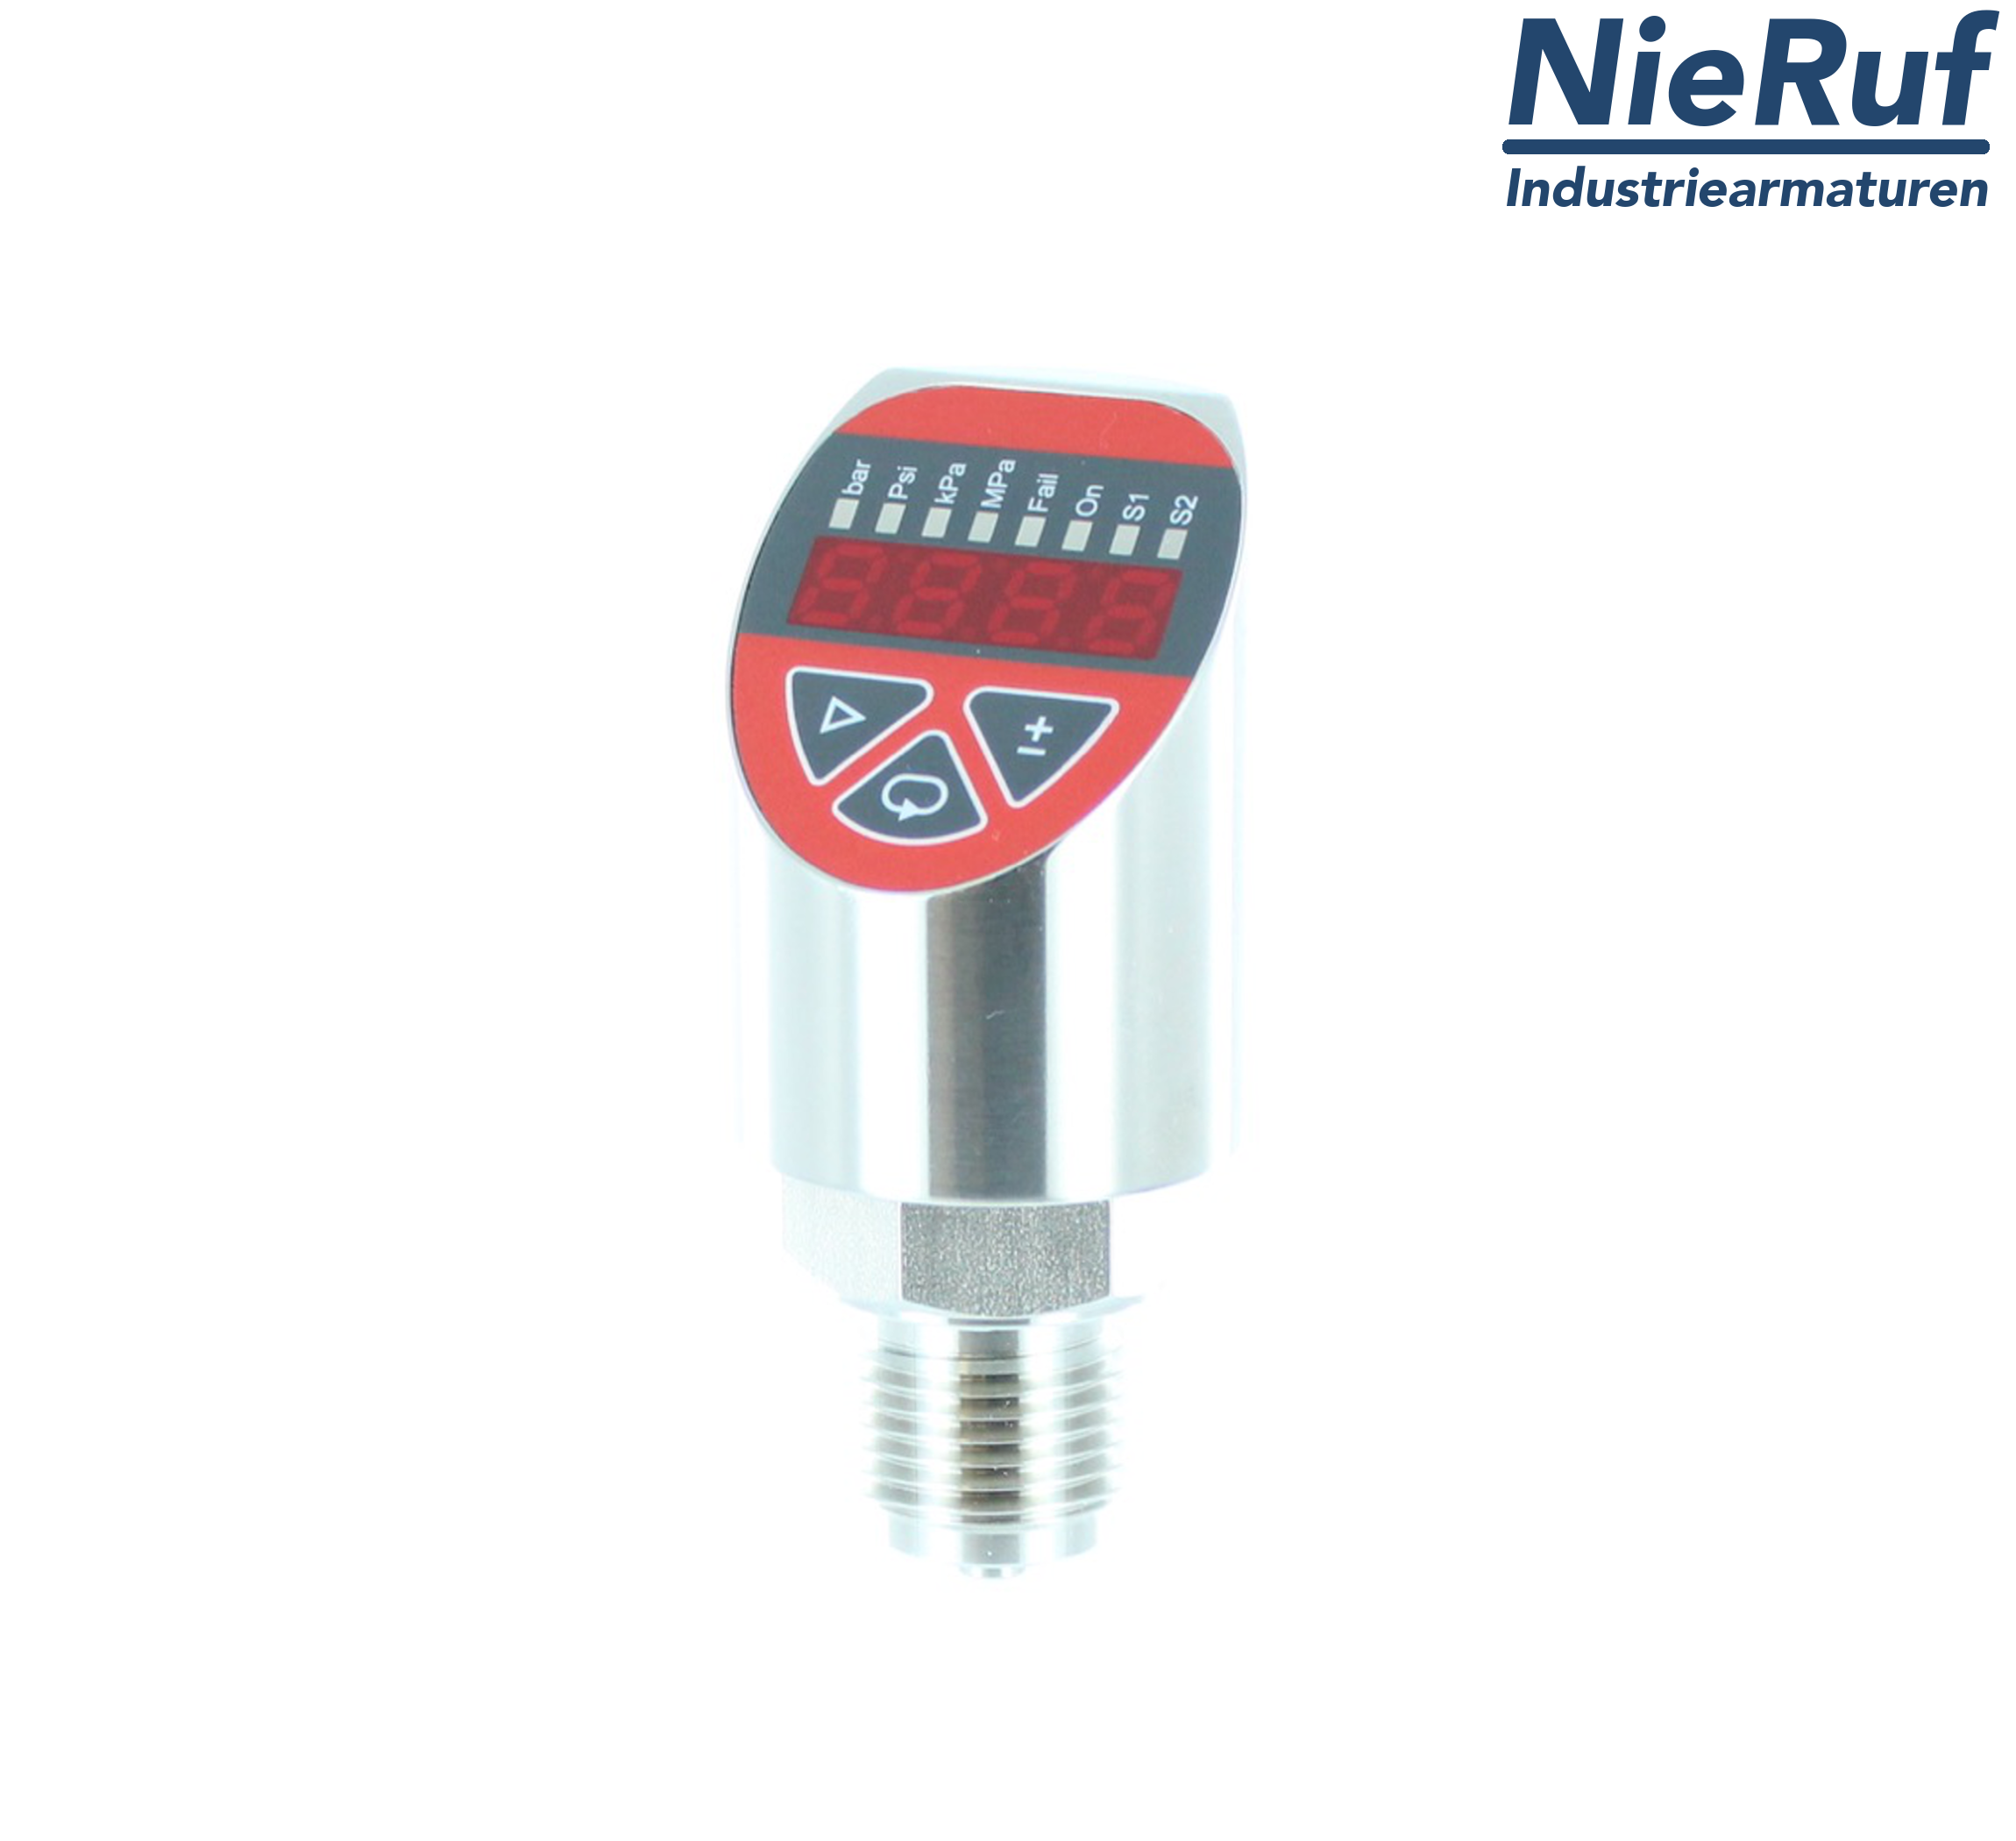 digital pressure sensor G 1/4" B 5-wire: 2xPNP, 1x4 - 20mA FPM 0,0 - 100,0 bar